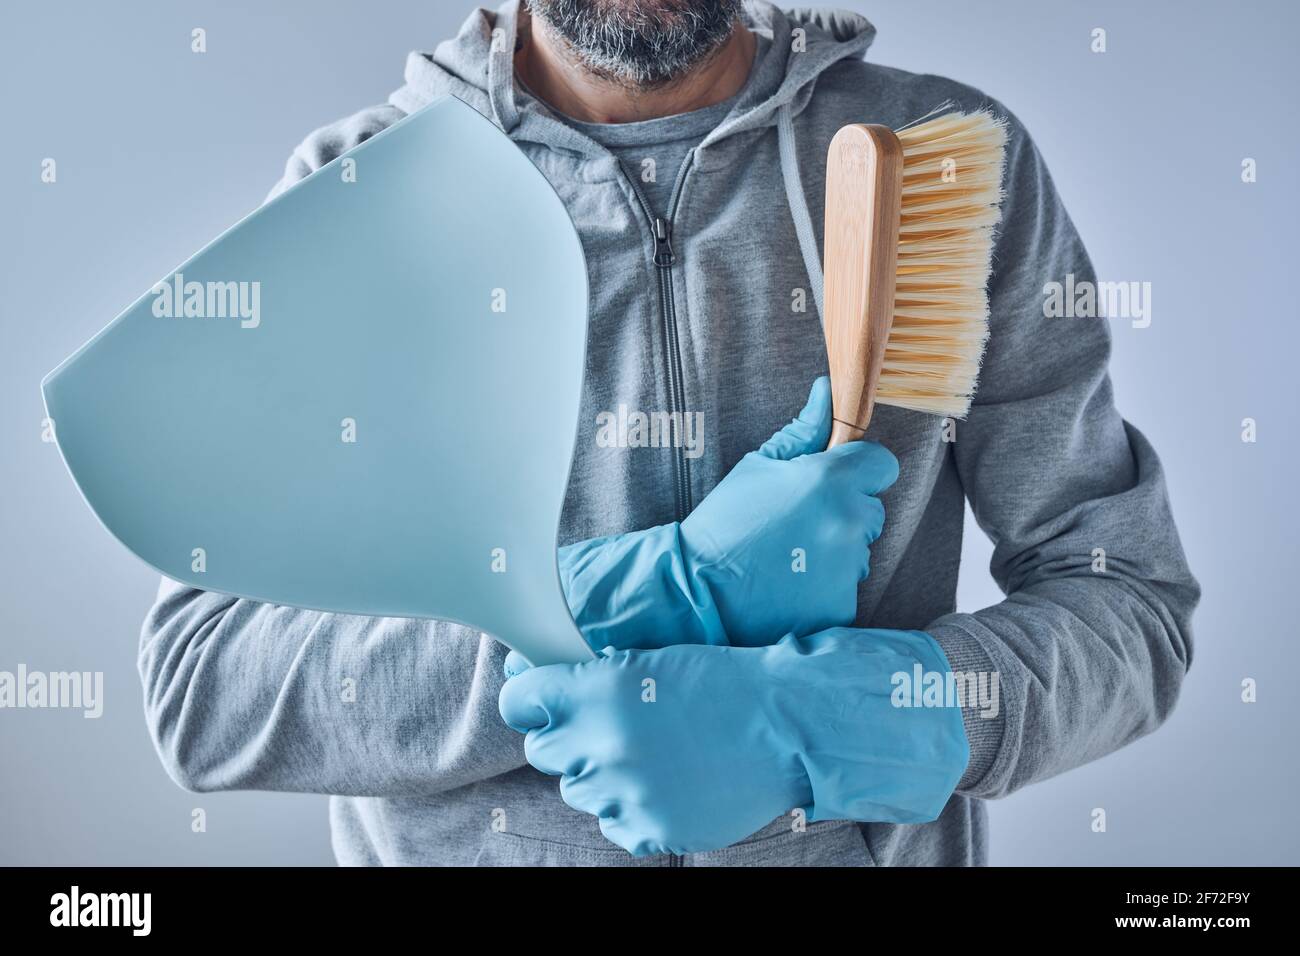 Prêt pour le nettoyage à la maison, homme équipé d'une pelle à poussière et d'un équipement de nettoyage à la brosse Banque D'Images